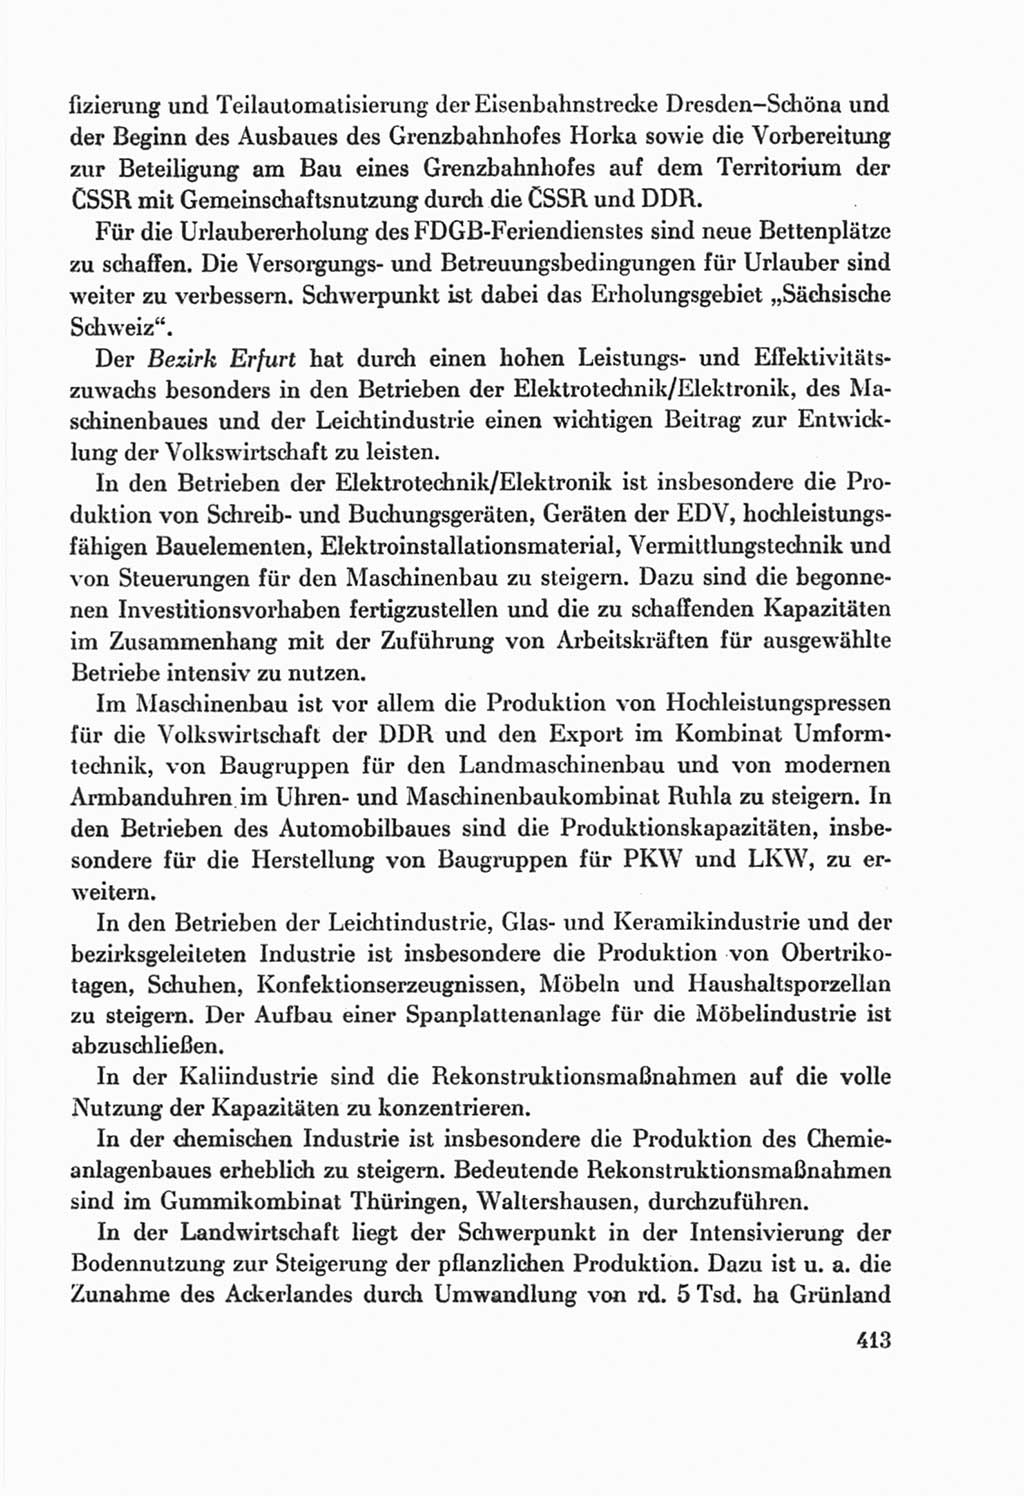 Protokoll der Verhandlungen des Ⅸ. Parteitages der Sozialistischen Einheitspartei Deutschlands (SED) [Deutsche Demokratische Republik (DDR)] 1976, Band 2, Seite 413 (Prot. Verh. Ⅸ. PT SED DDR 1976, Bd. 2, S. 413)